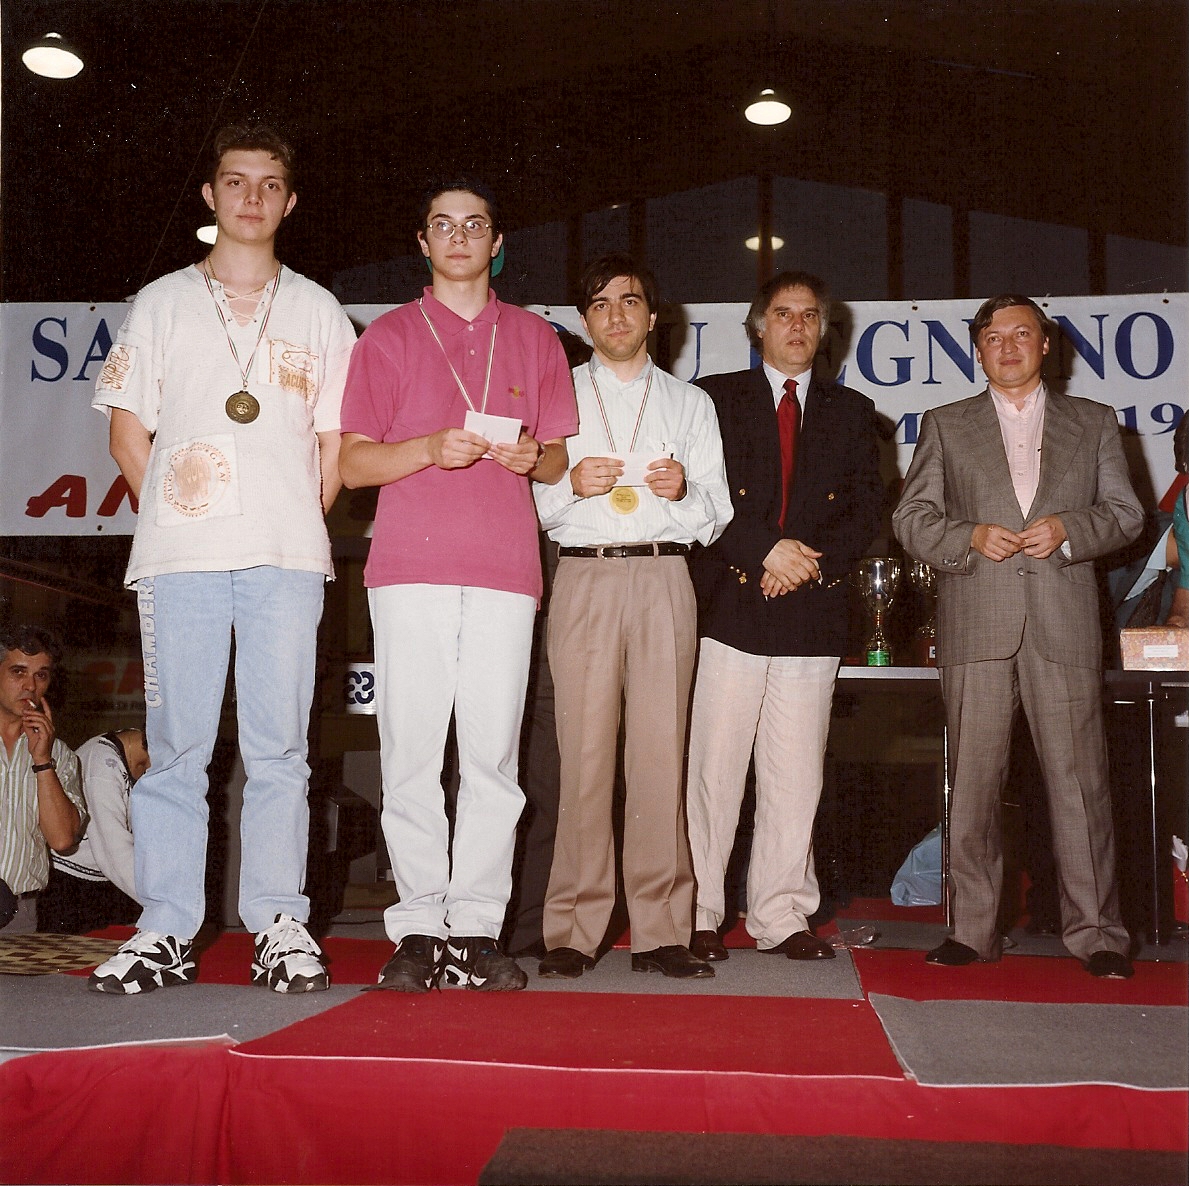 S. Giorgio 1995-14° edizione Karpov Anatoli (53)